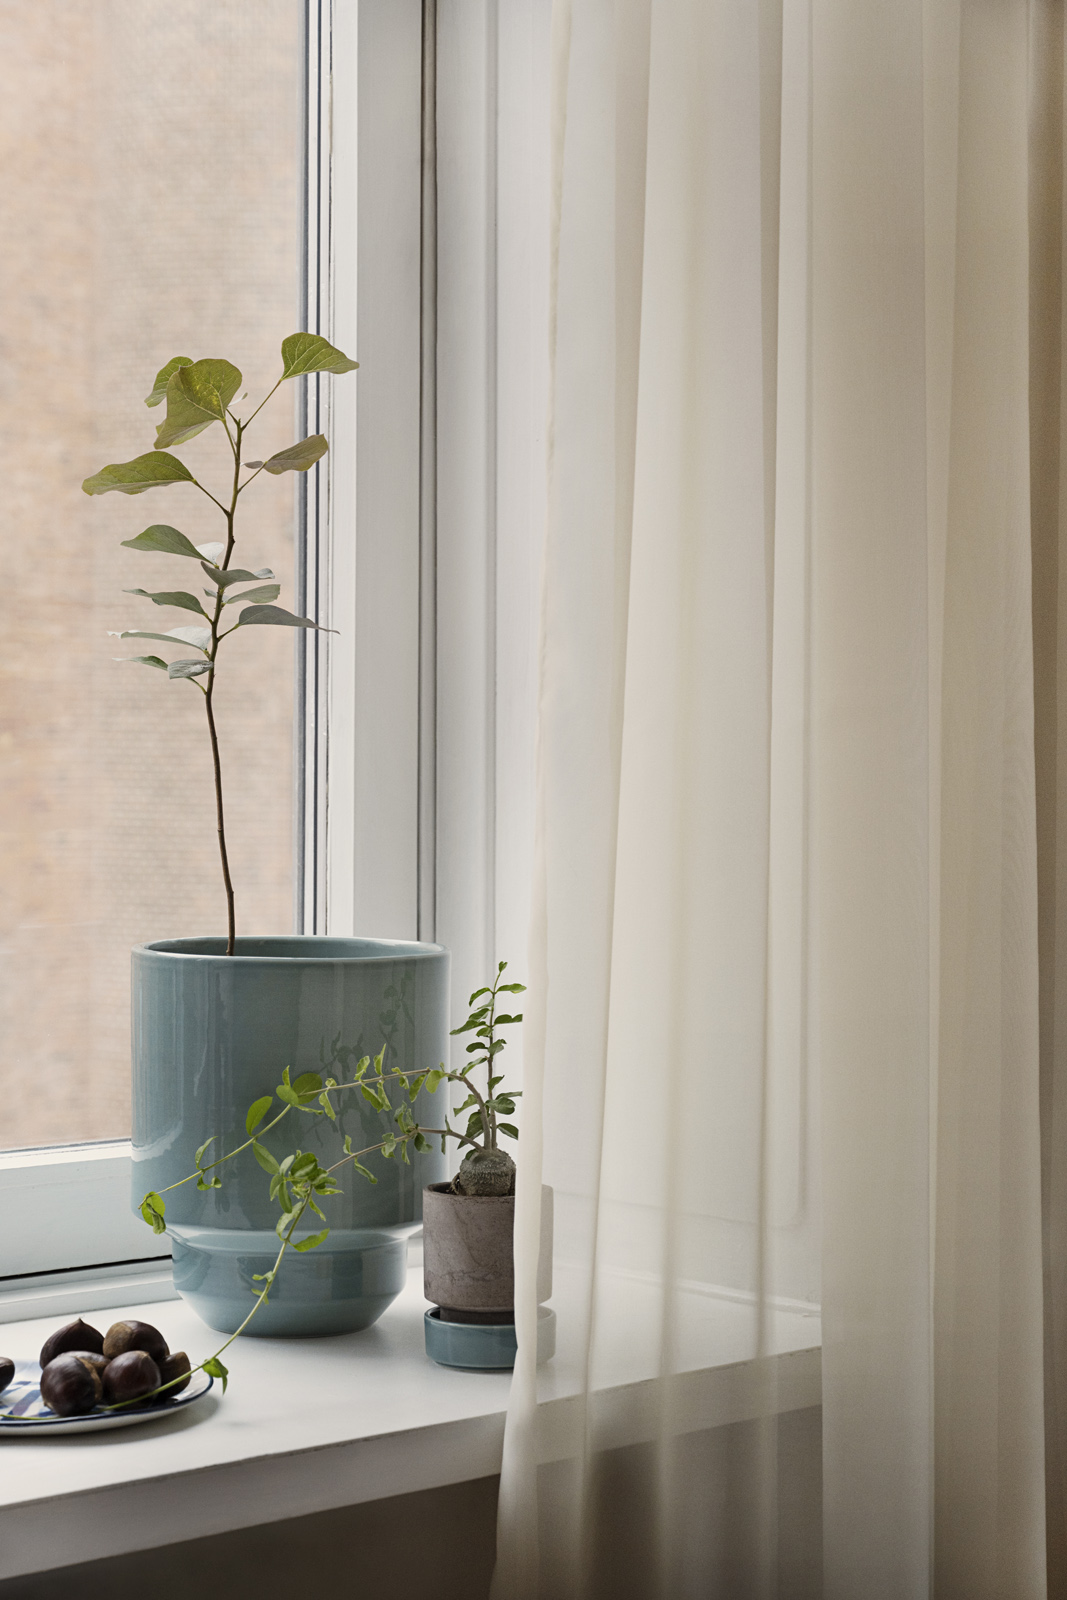 Misty blue Hoff pot in windowsill with plant